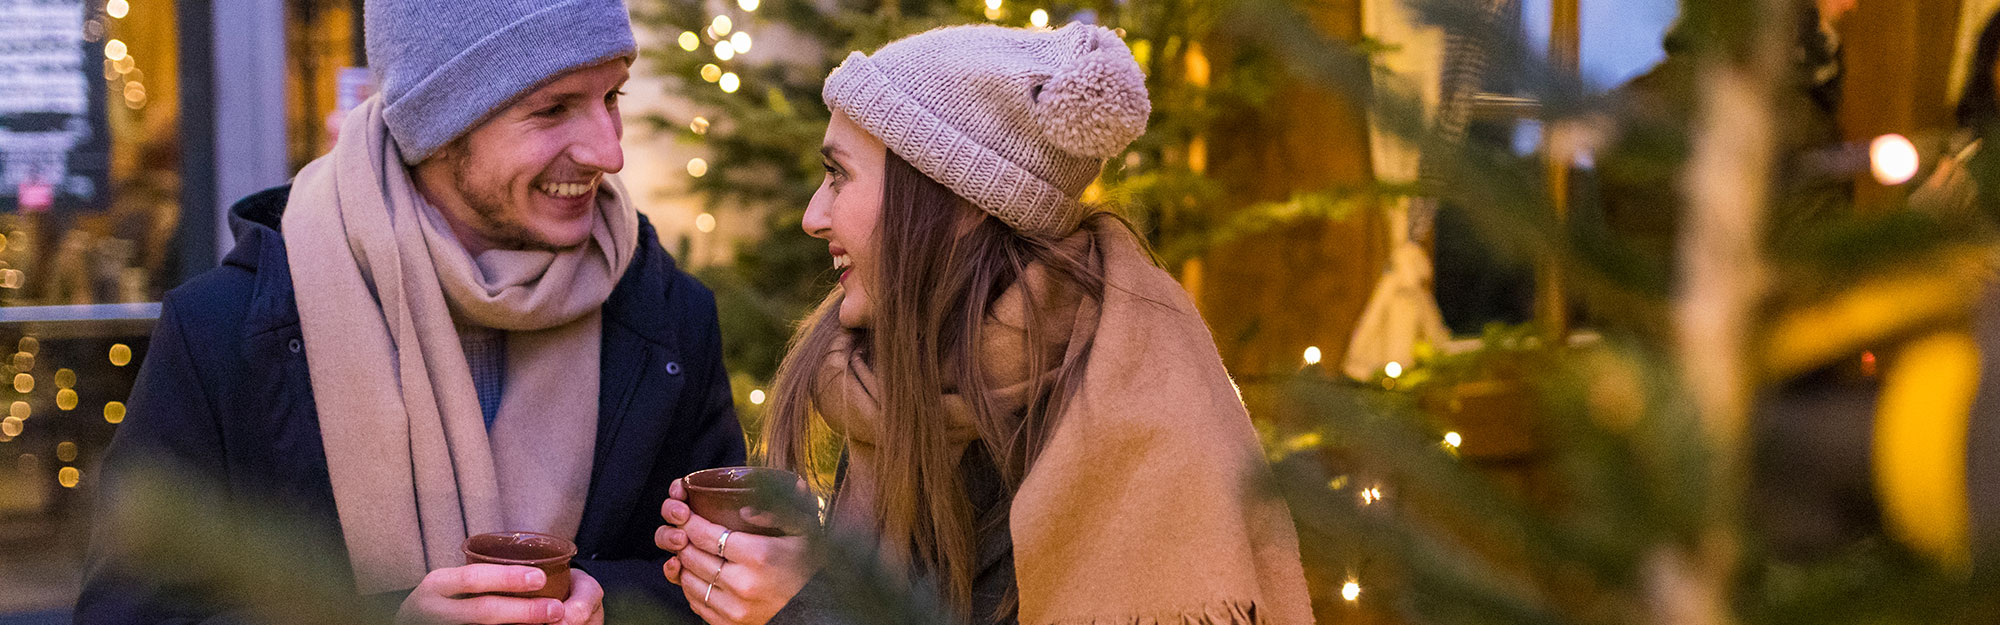 Ett vinterklätt par står utomhus, håller i kaffemuggar och ler mot varandra